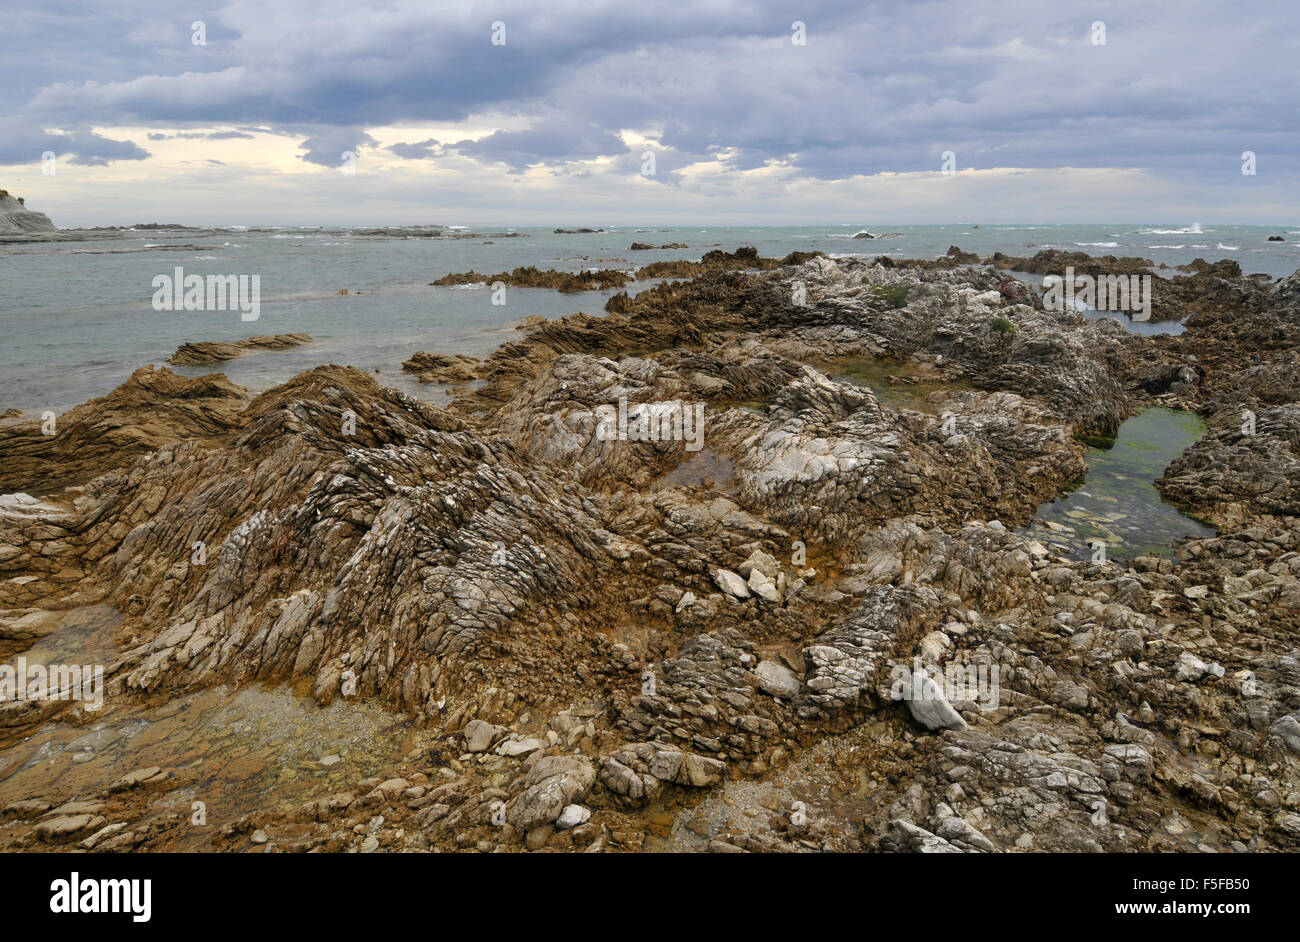 Rocas y pozas de marea de la península de Kaikoura, Kaikoura, Isla del Sur, Nueva Zelanda Foto de stock